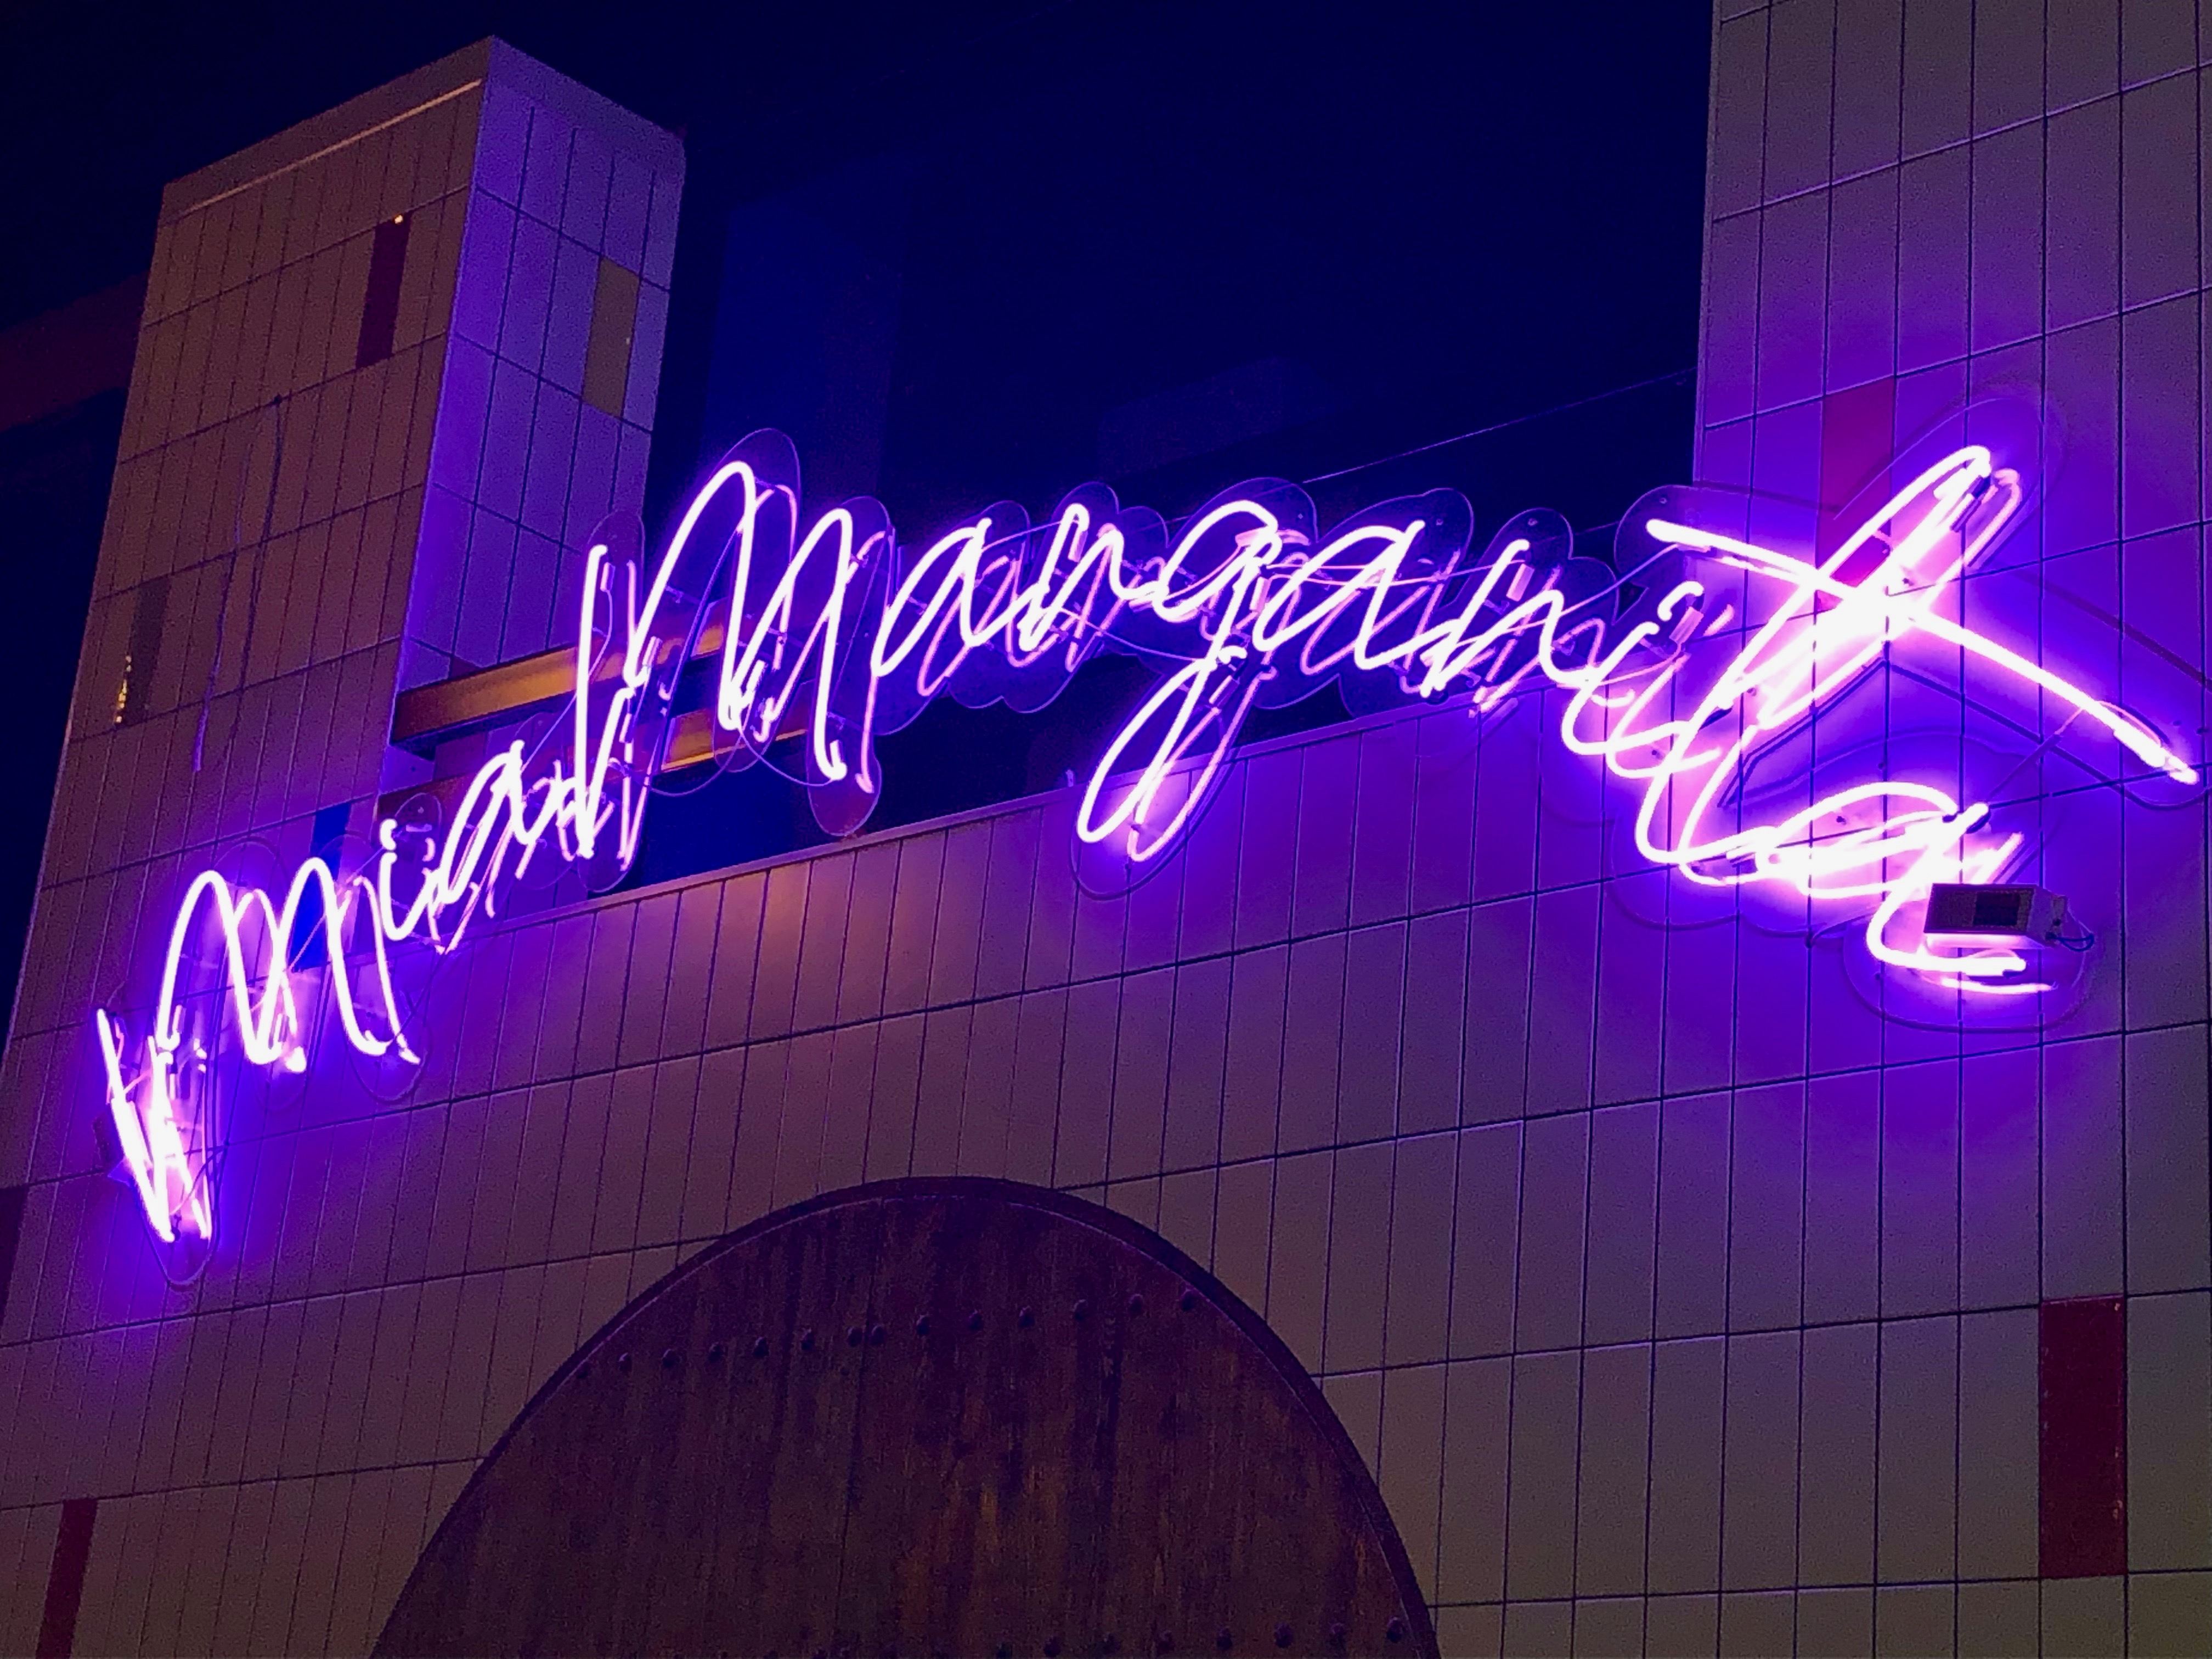 Illuminated Mia Margarita sign